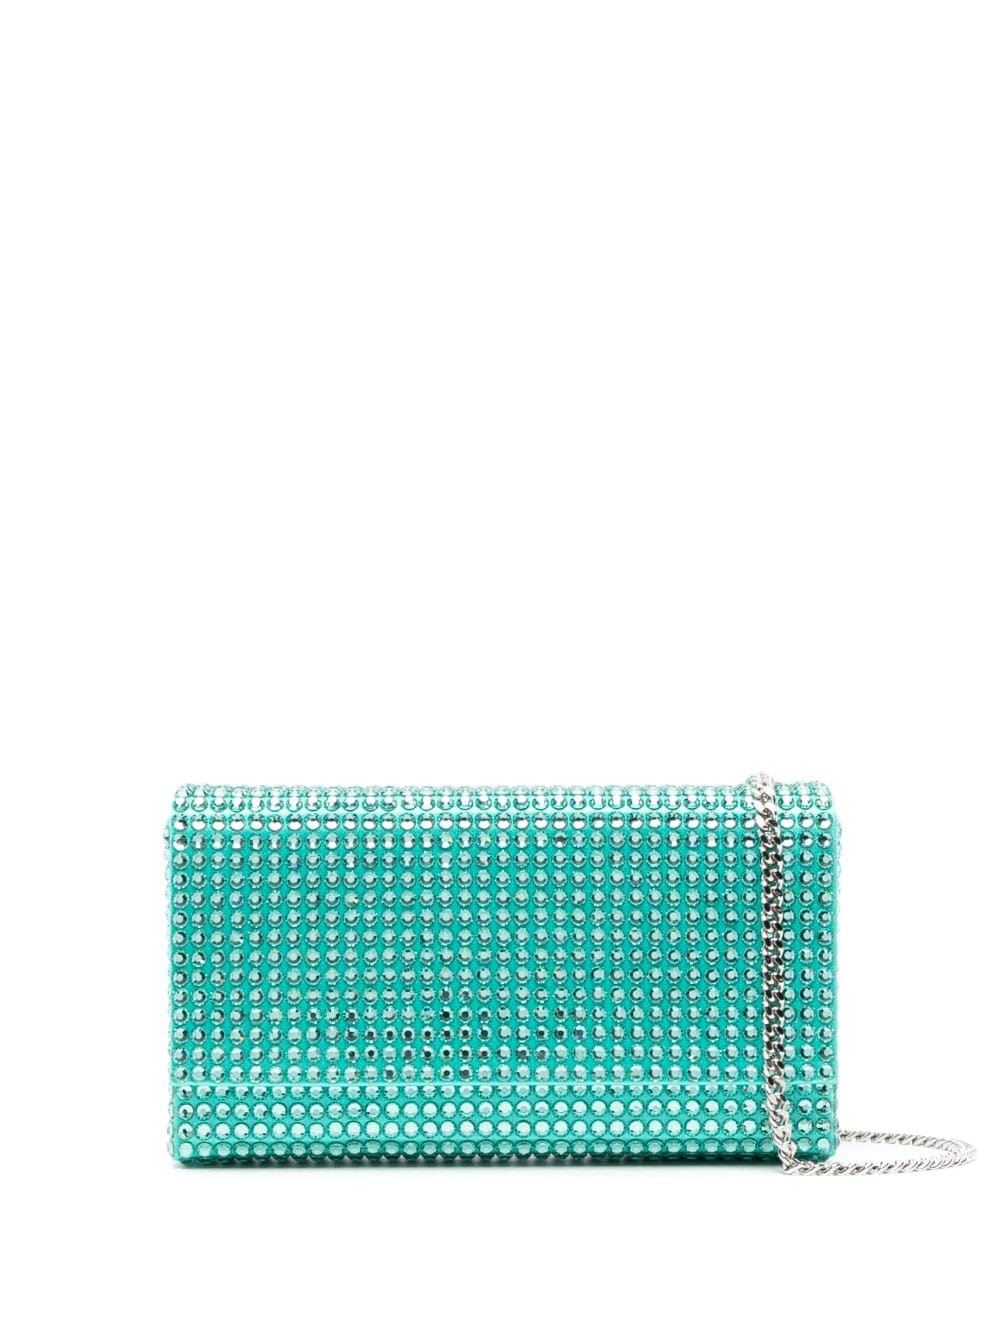 Paloma crystal-embellished clutch bag